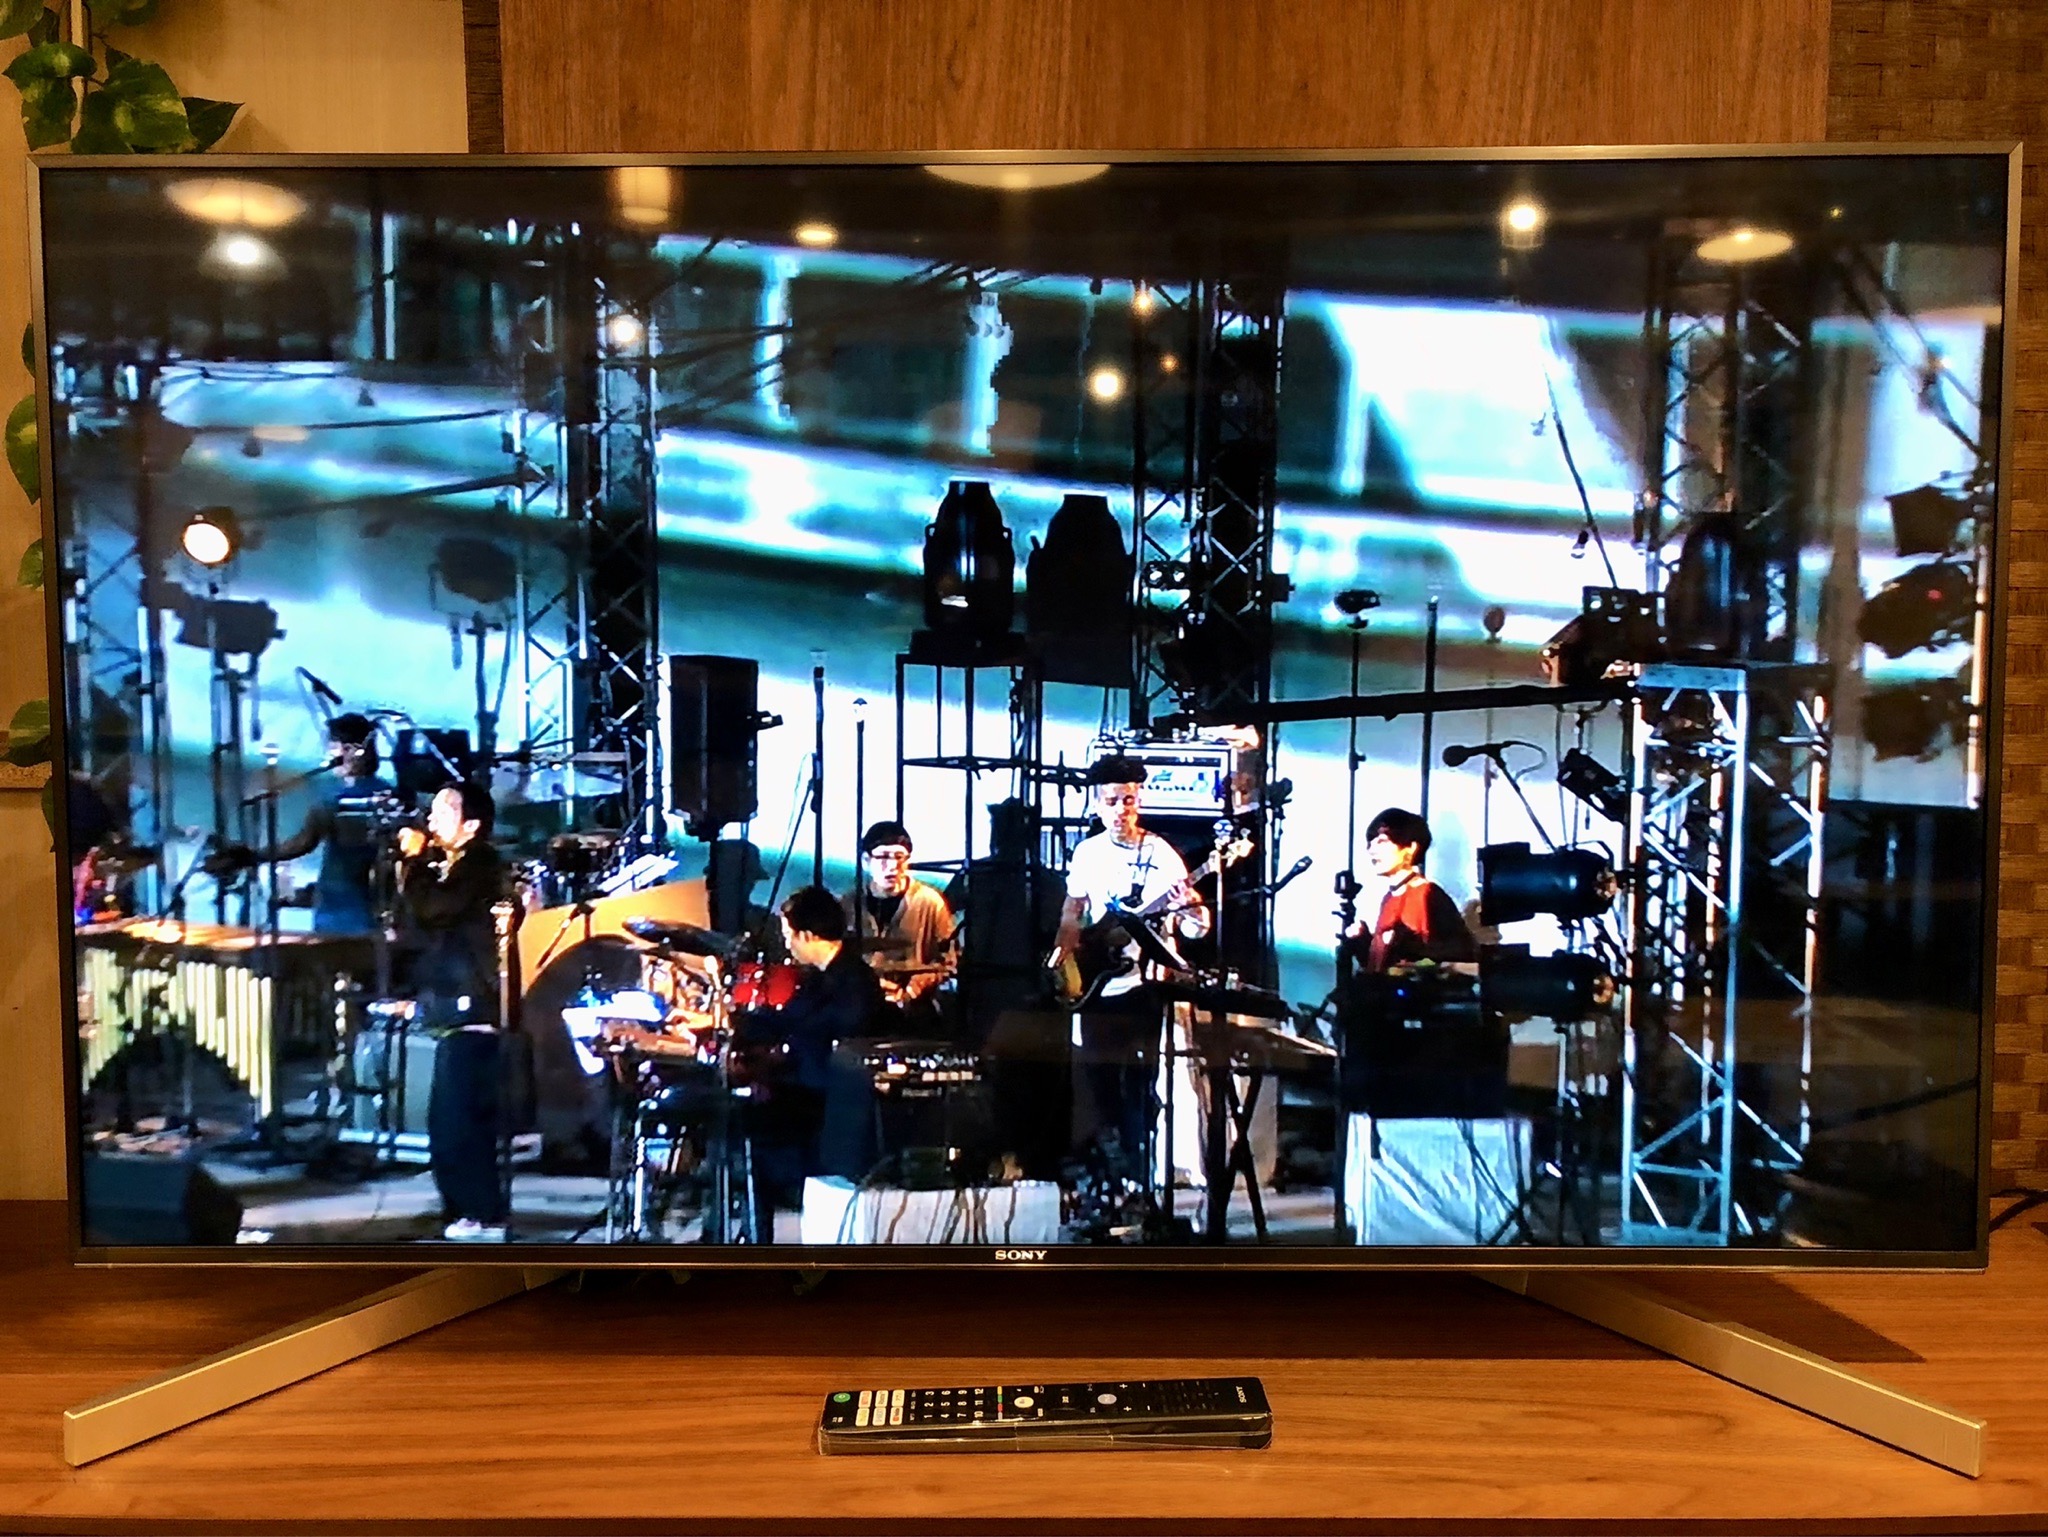 店舗クーポン SONY 4K液晶テレビ（49型） BRAVIA テレビ